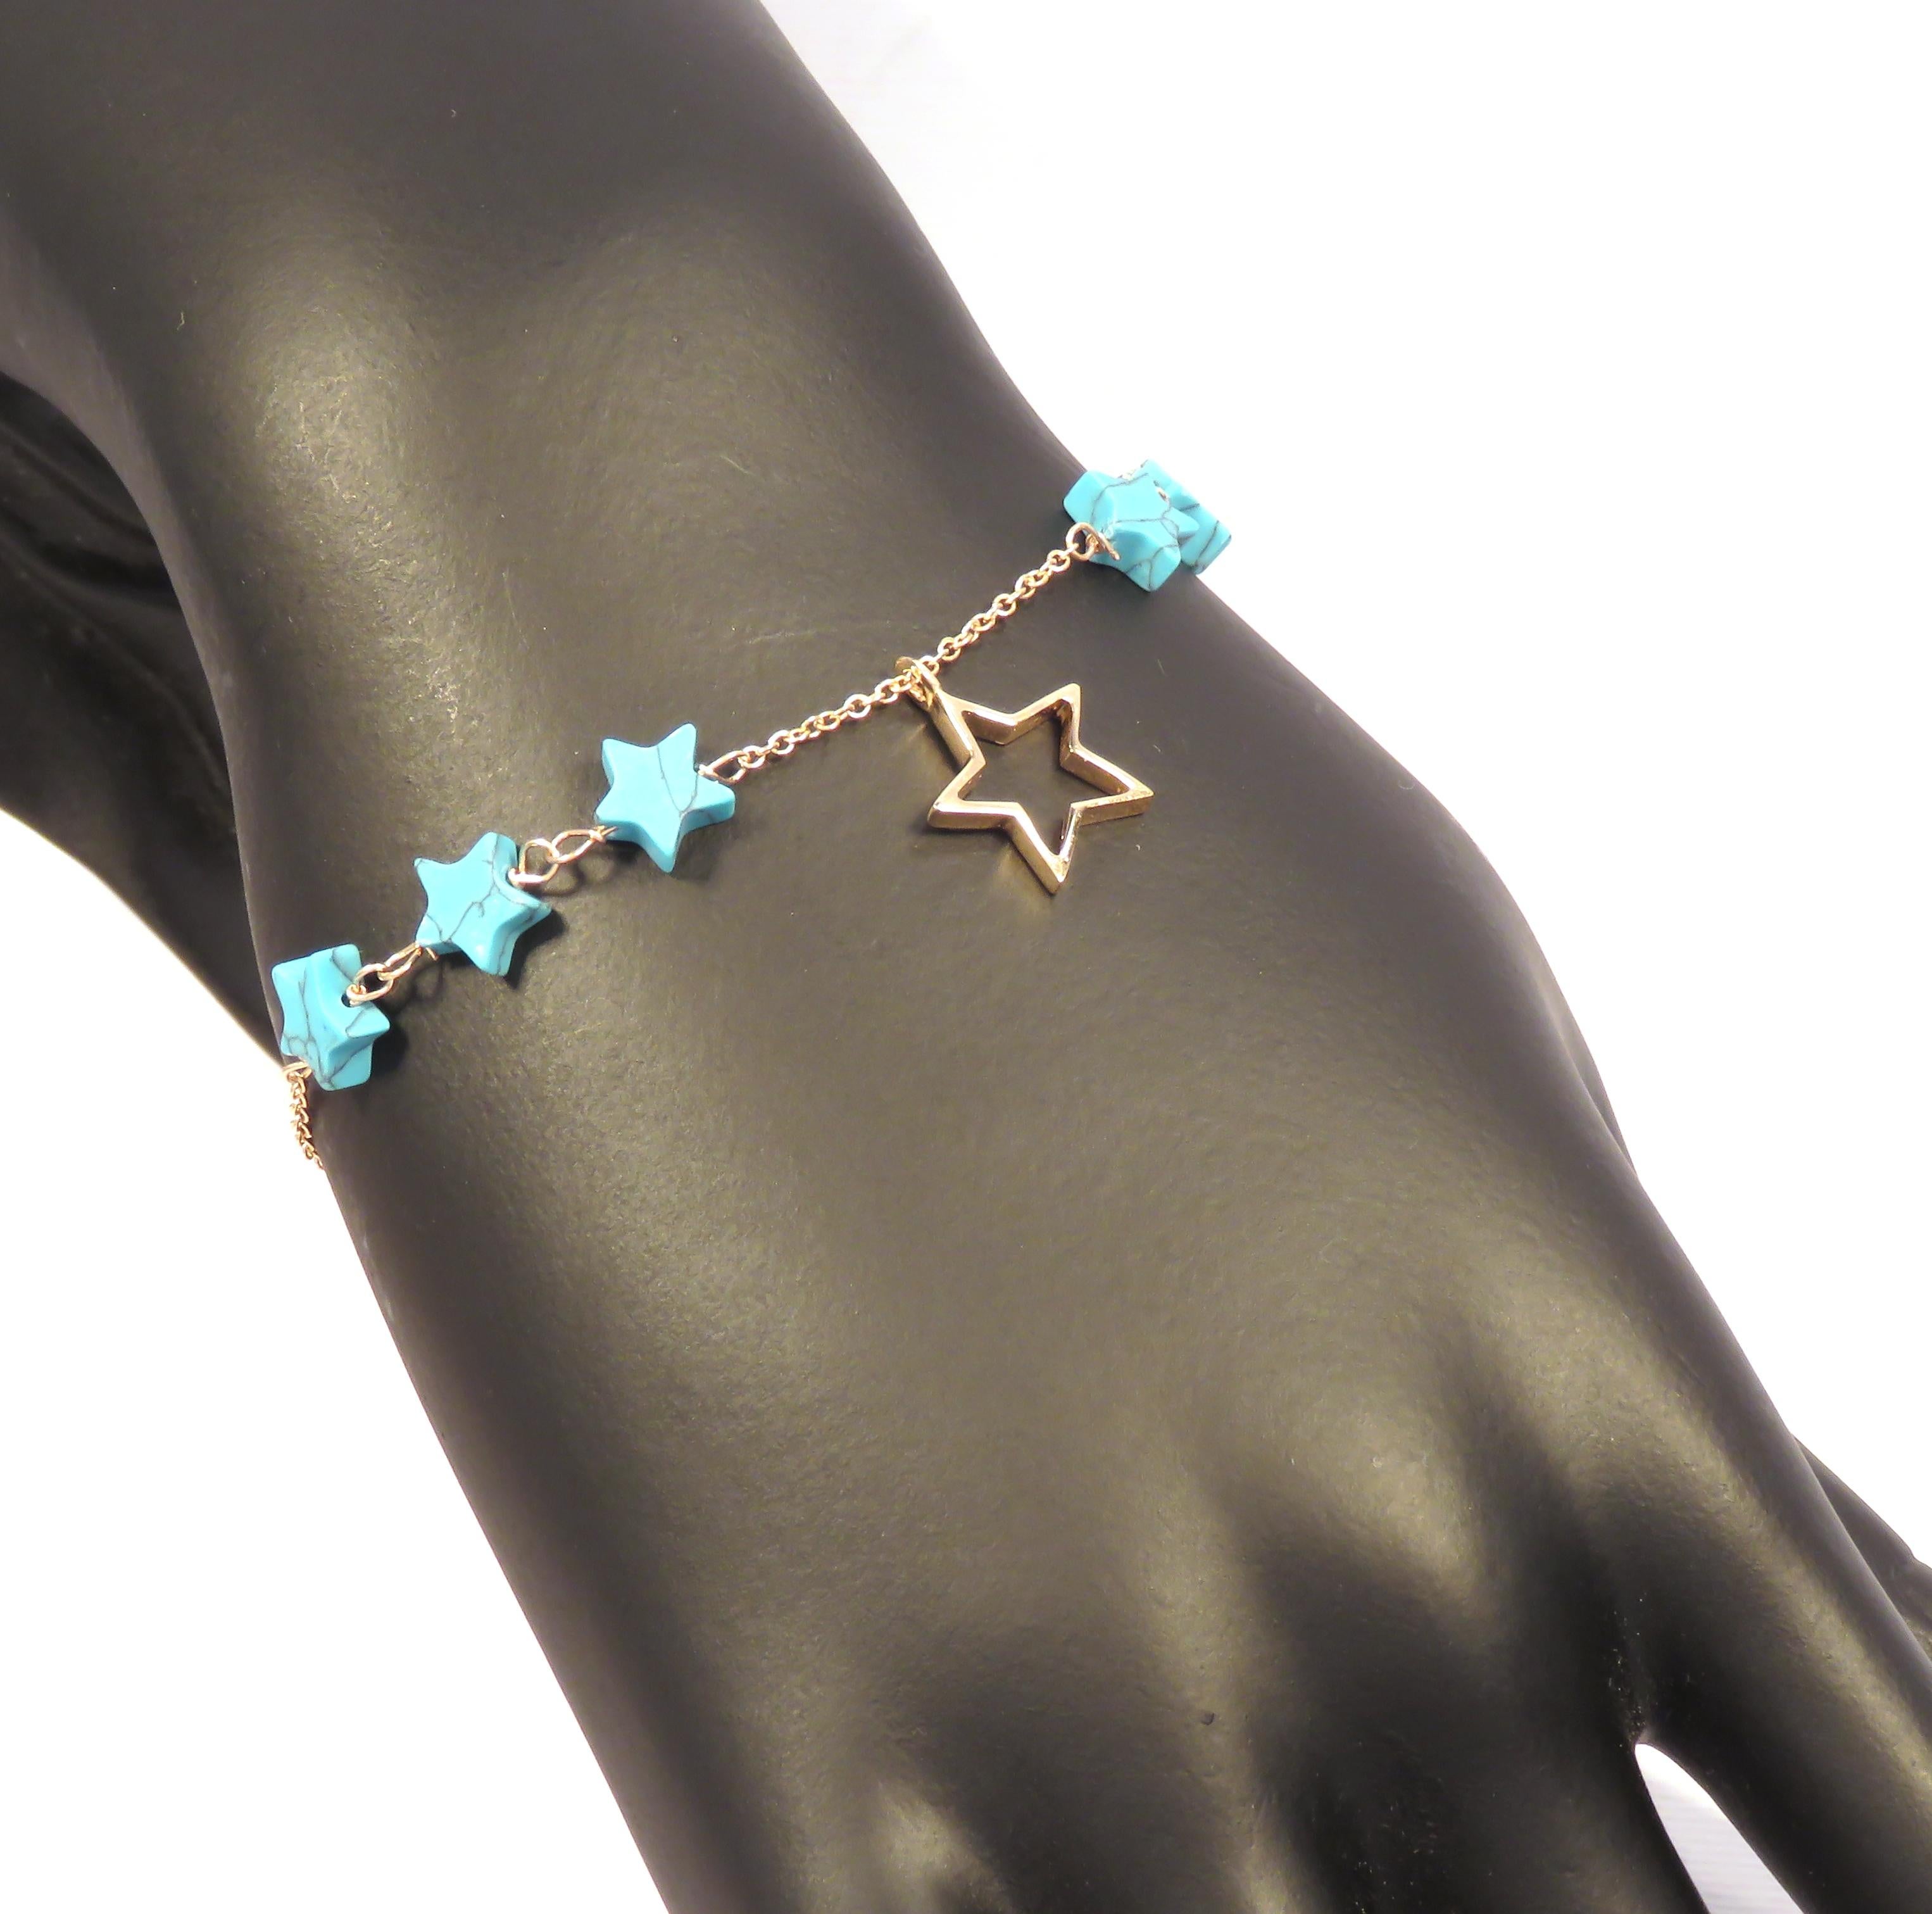 Bracelet attrayant avec des turquoises naturelles bleues taillées en étoile reliées à la main en or rose 9 carats et une breloque étoile en or rose 9 carats. La longueur du bracelet est réglable de 170 mm à 190 mm / de 6.692 pouces à 7.480 pouces,